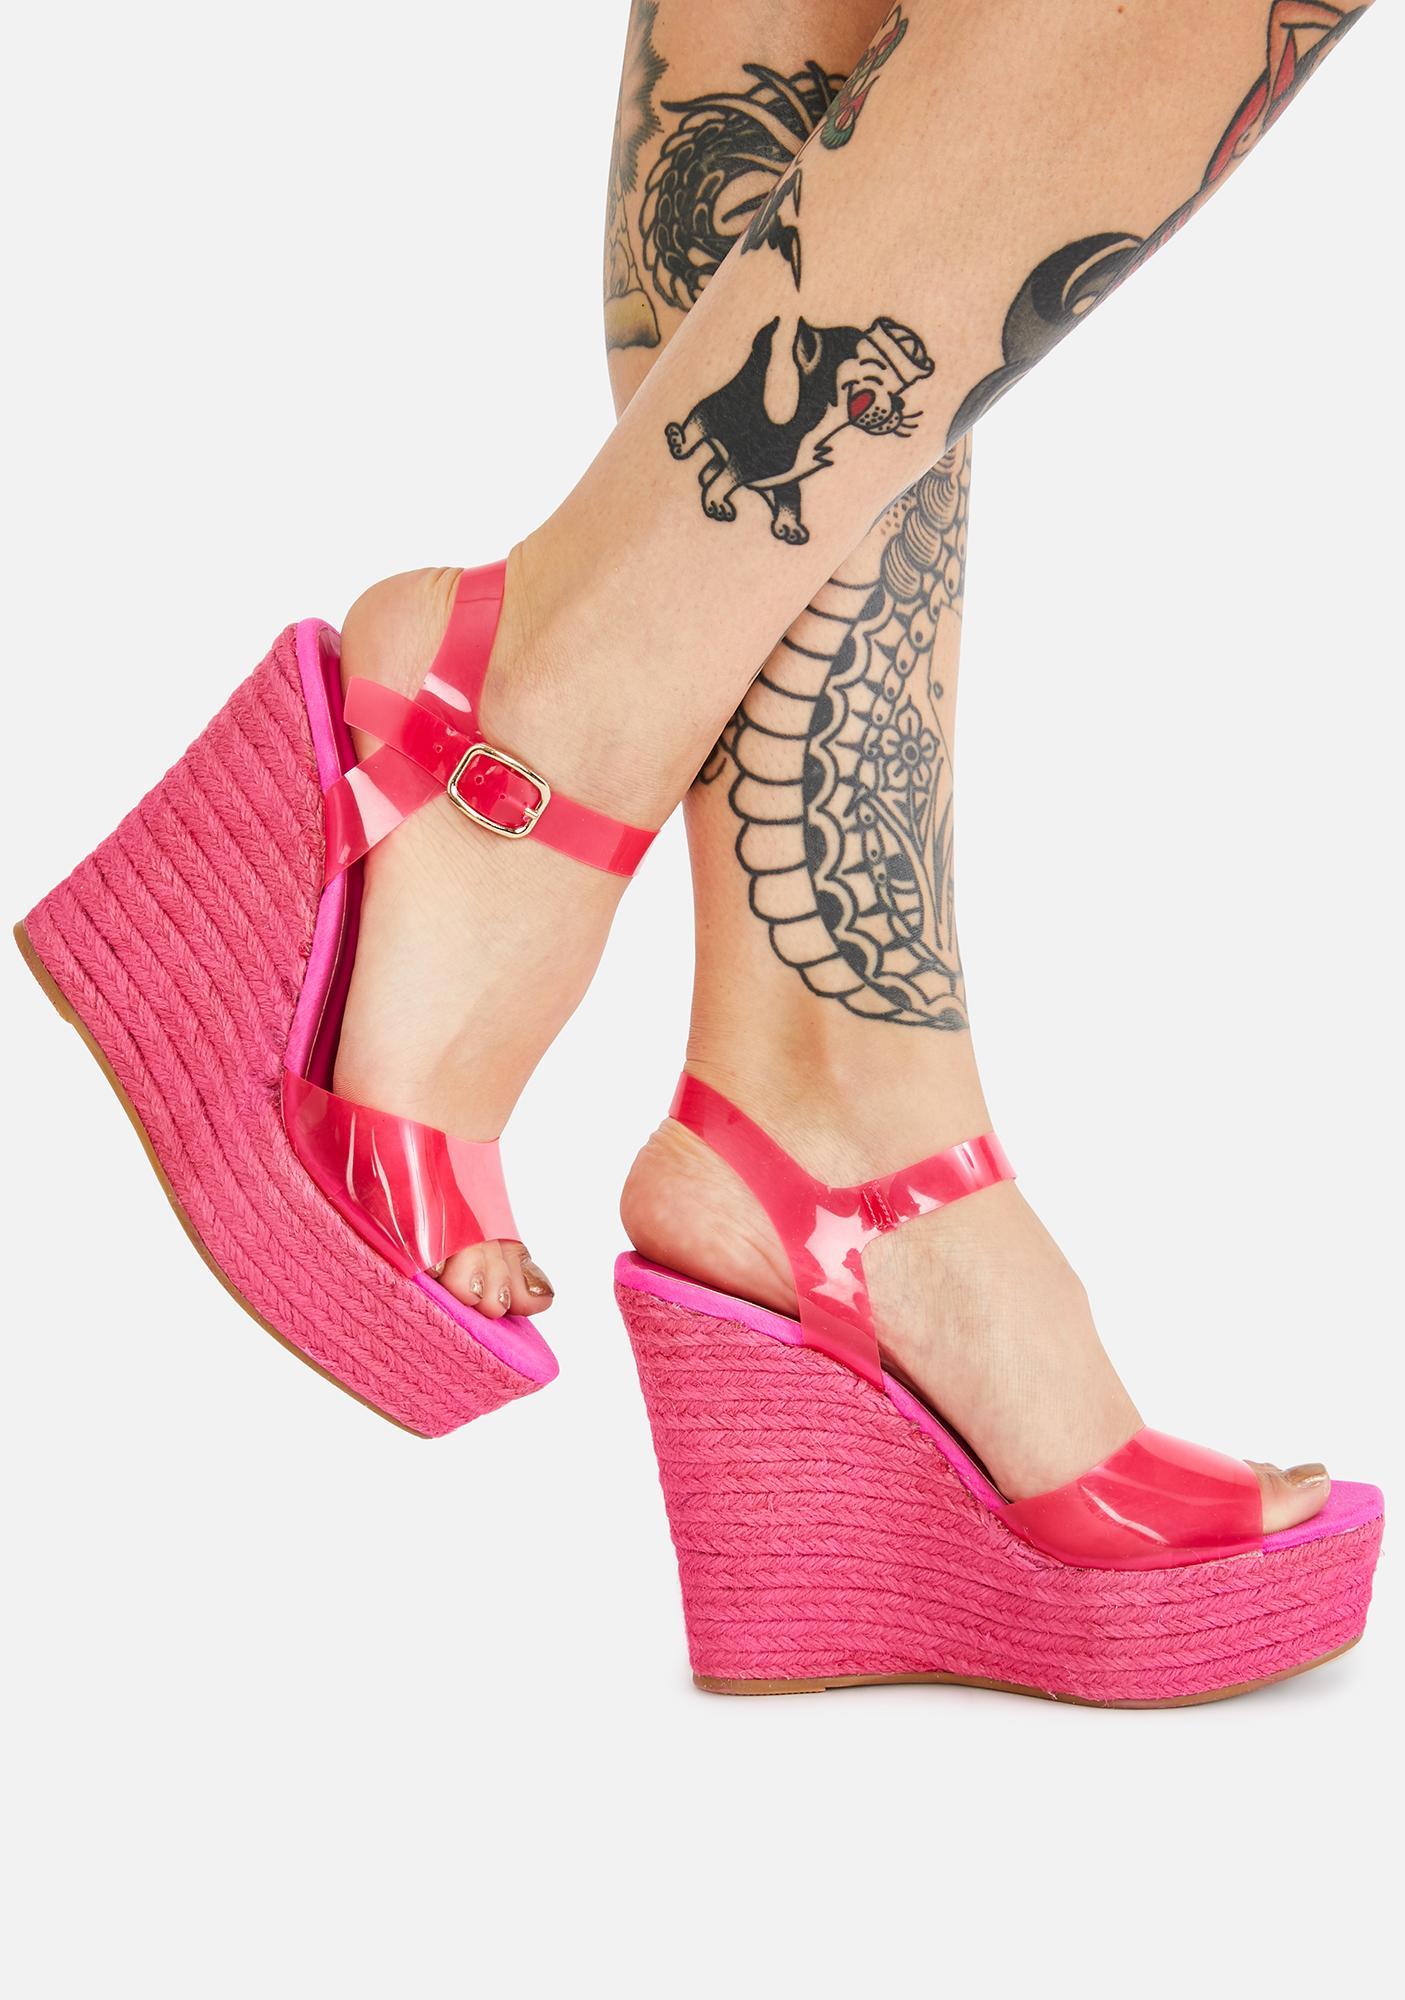 Espadrille Woven Wedge Heels - Pink 